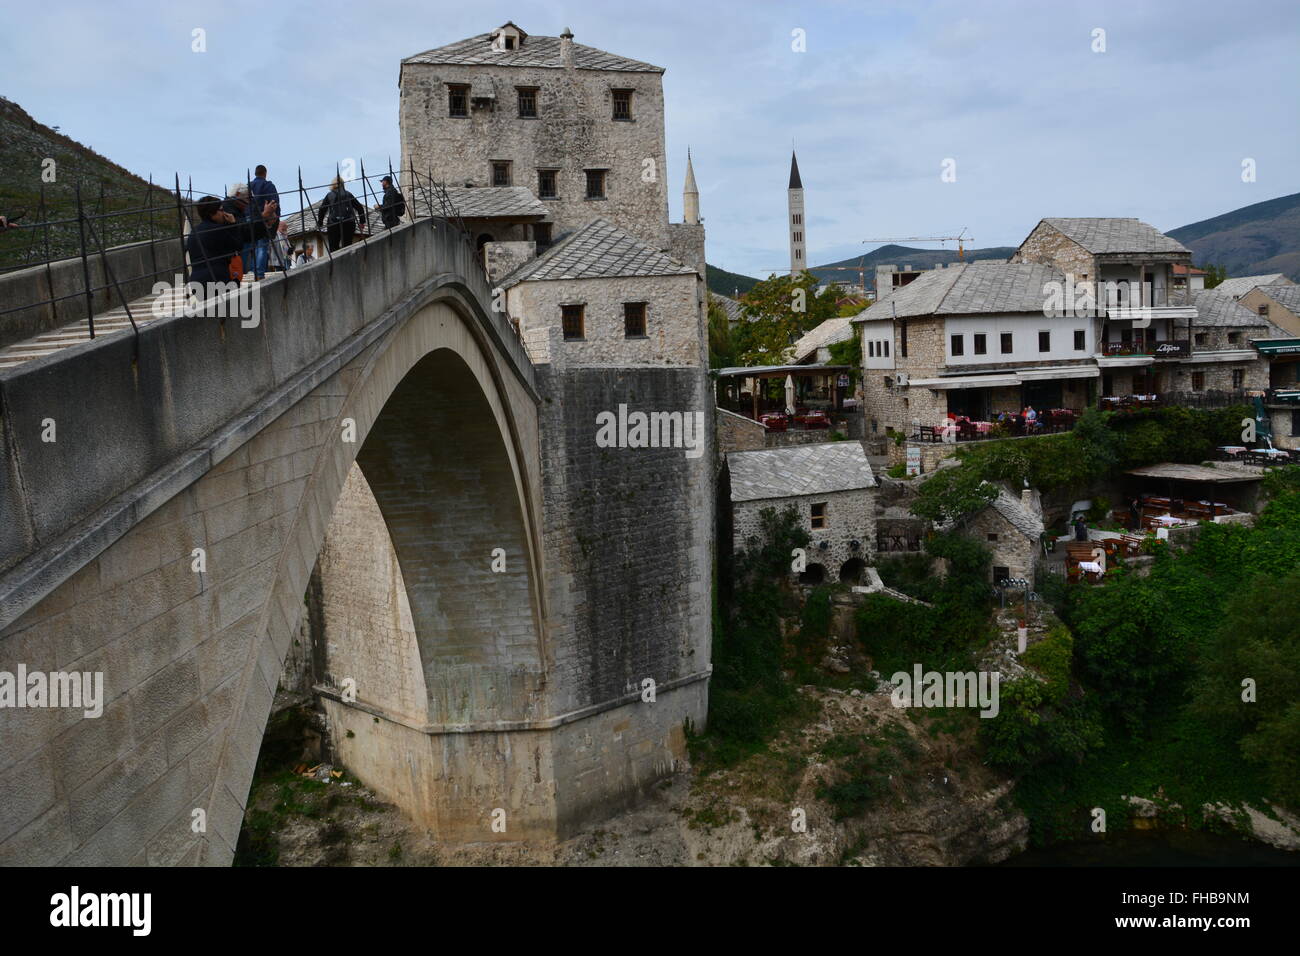 Les gens traversent le pont ottoman du 16ème siècle reconstruite Stari Most ou vieux pont de Mostar. Banque D'Images